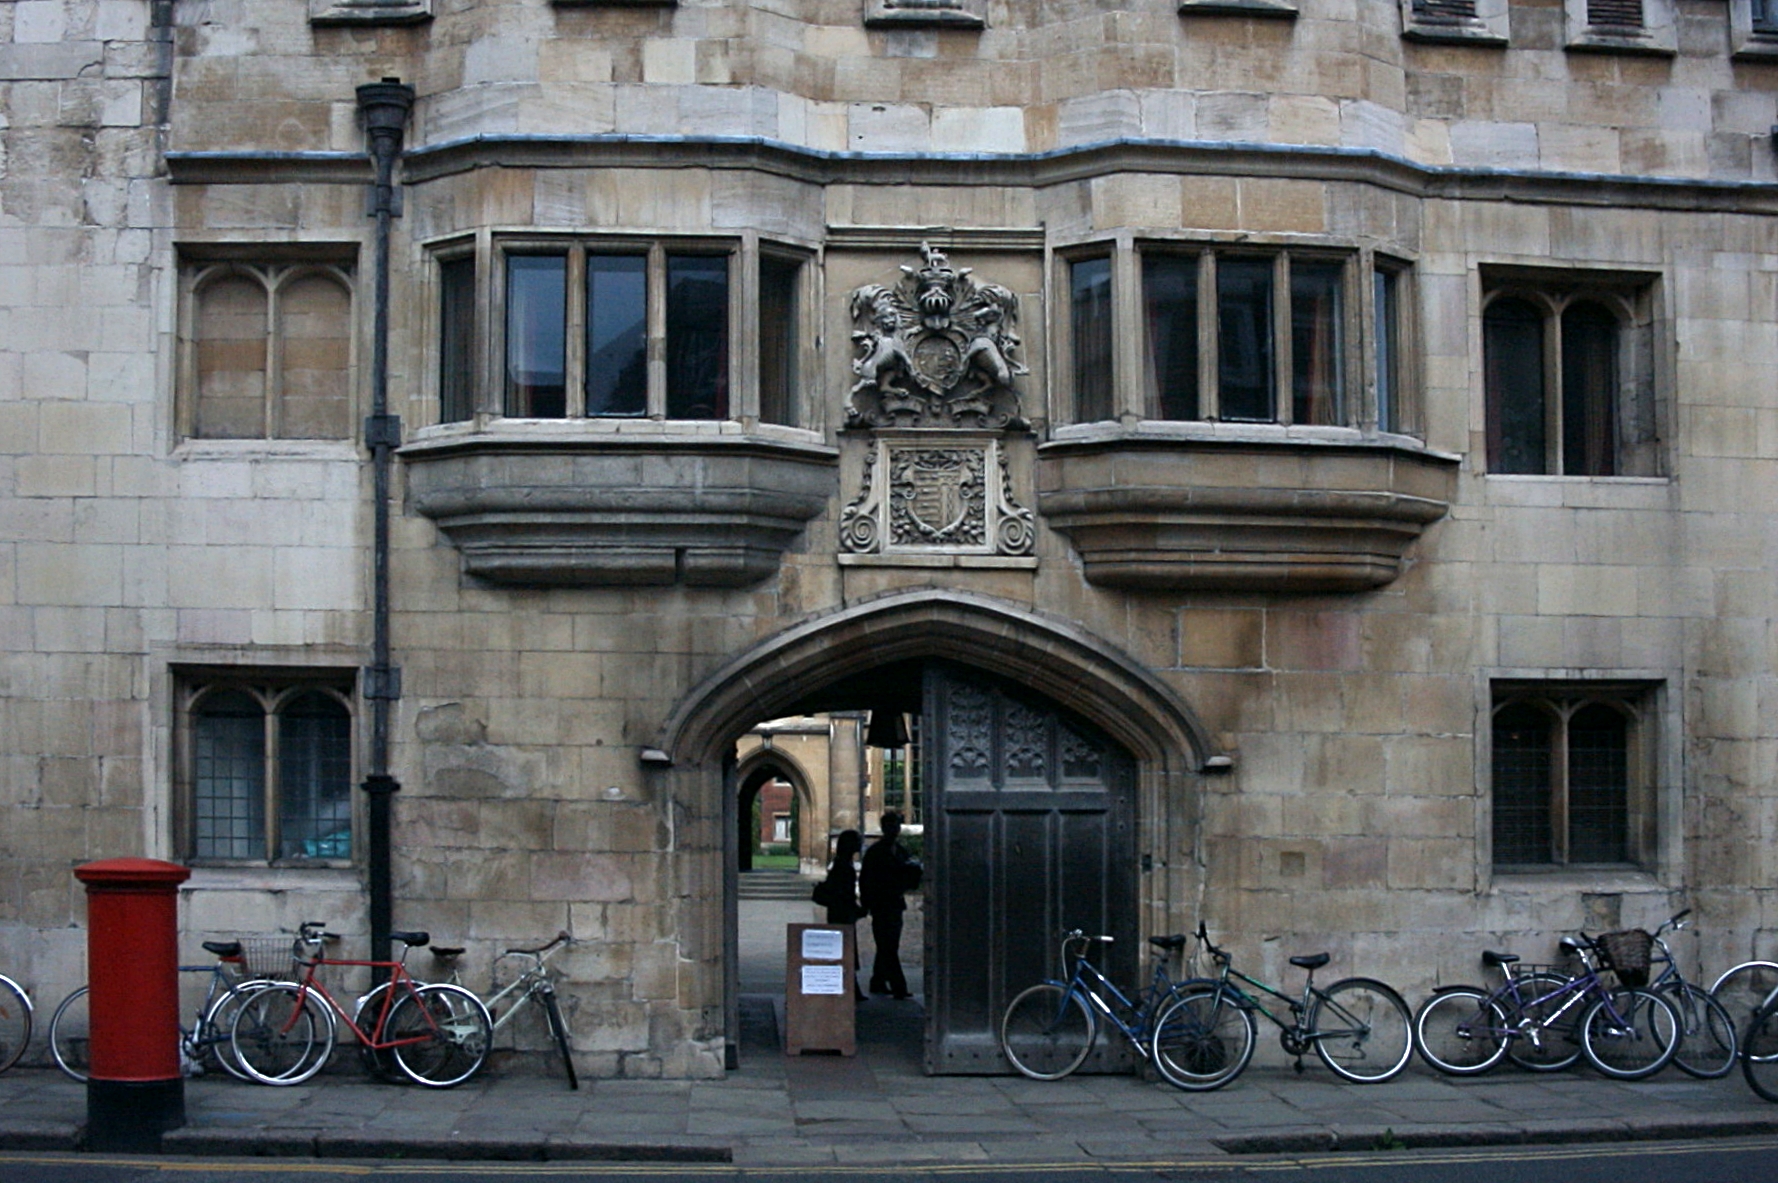 Pembroke College, Cambridge